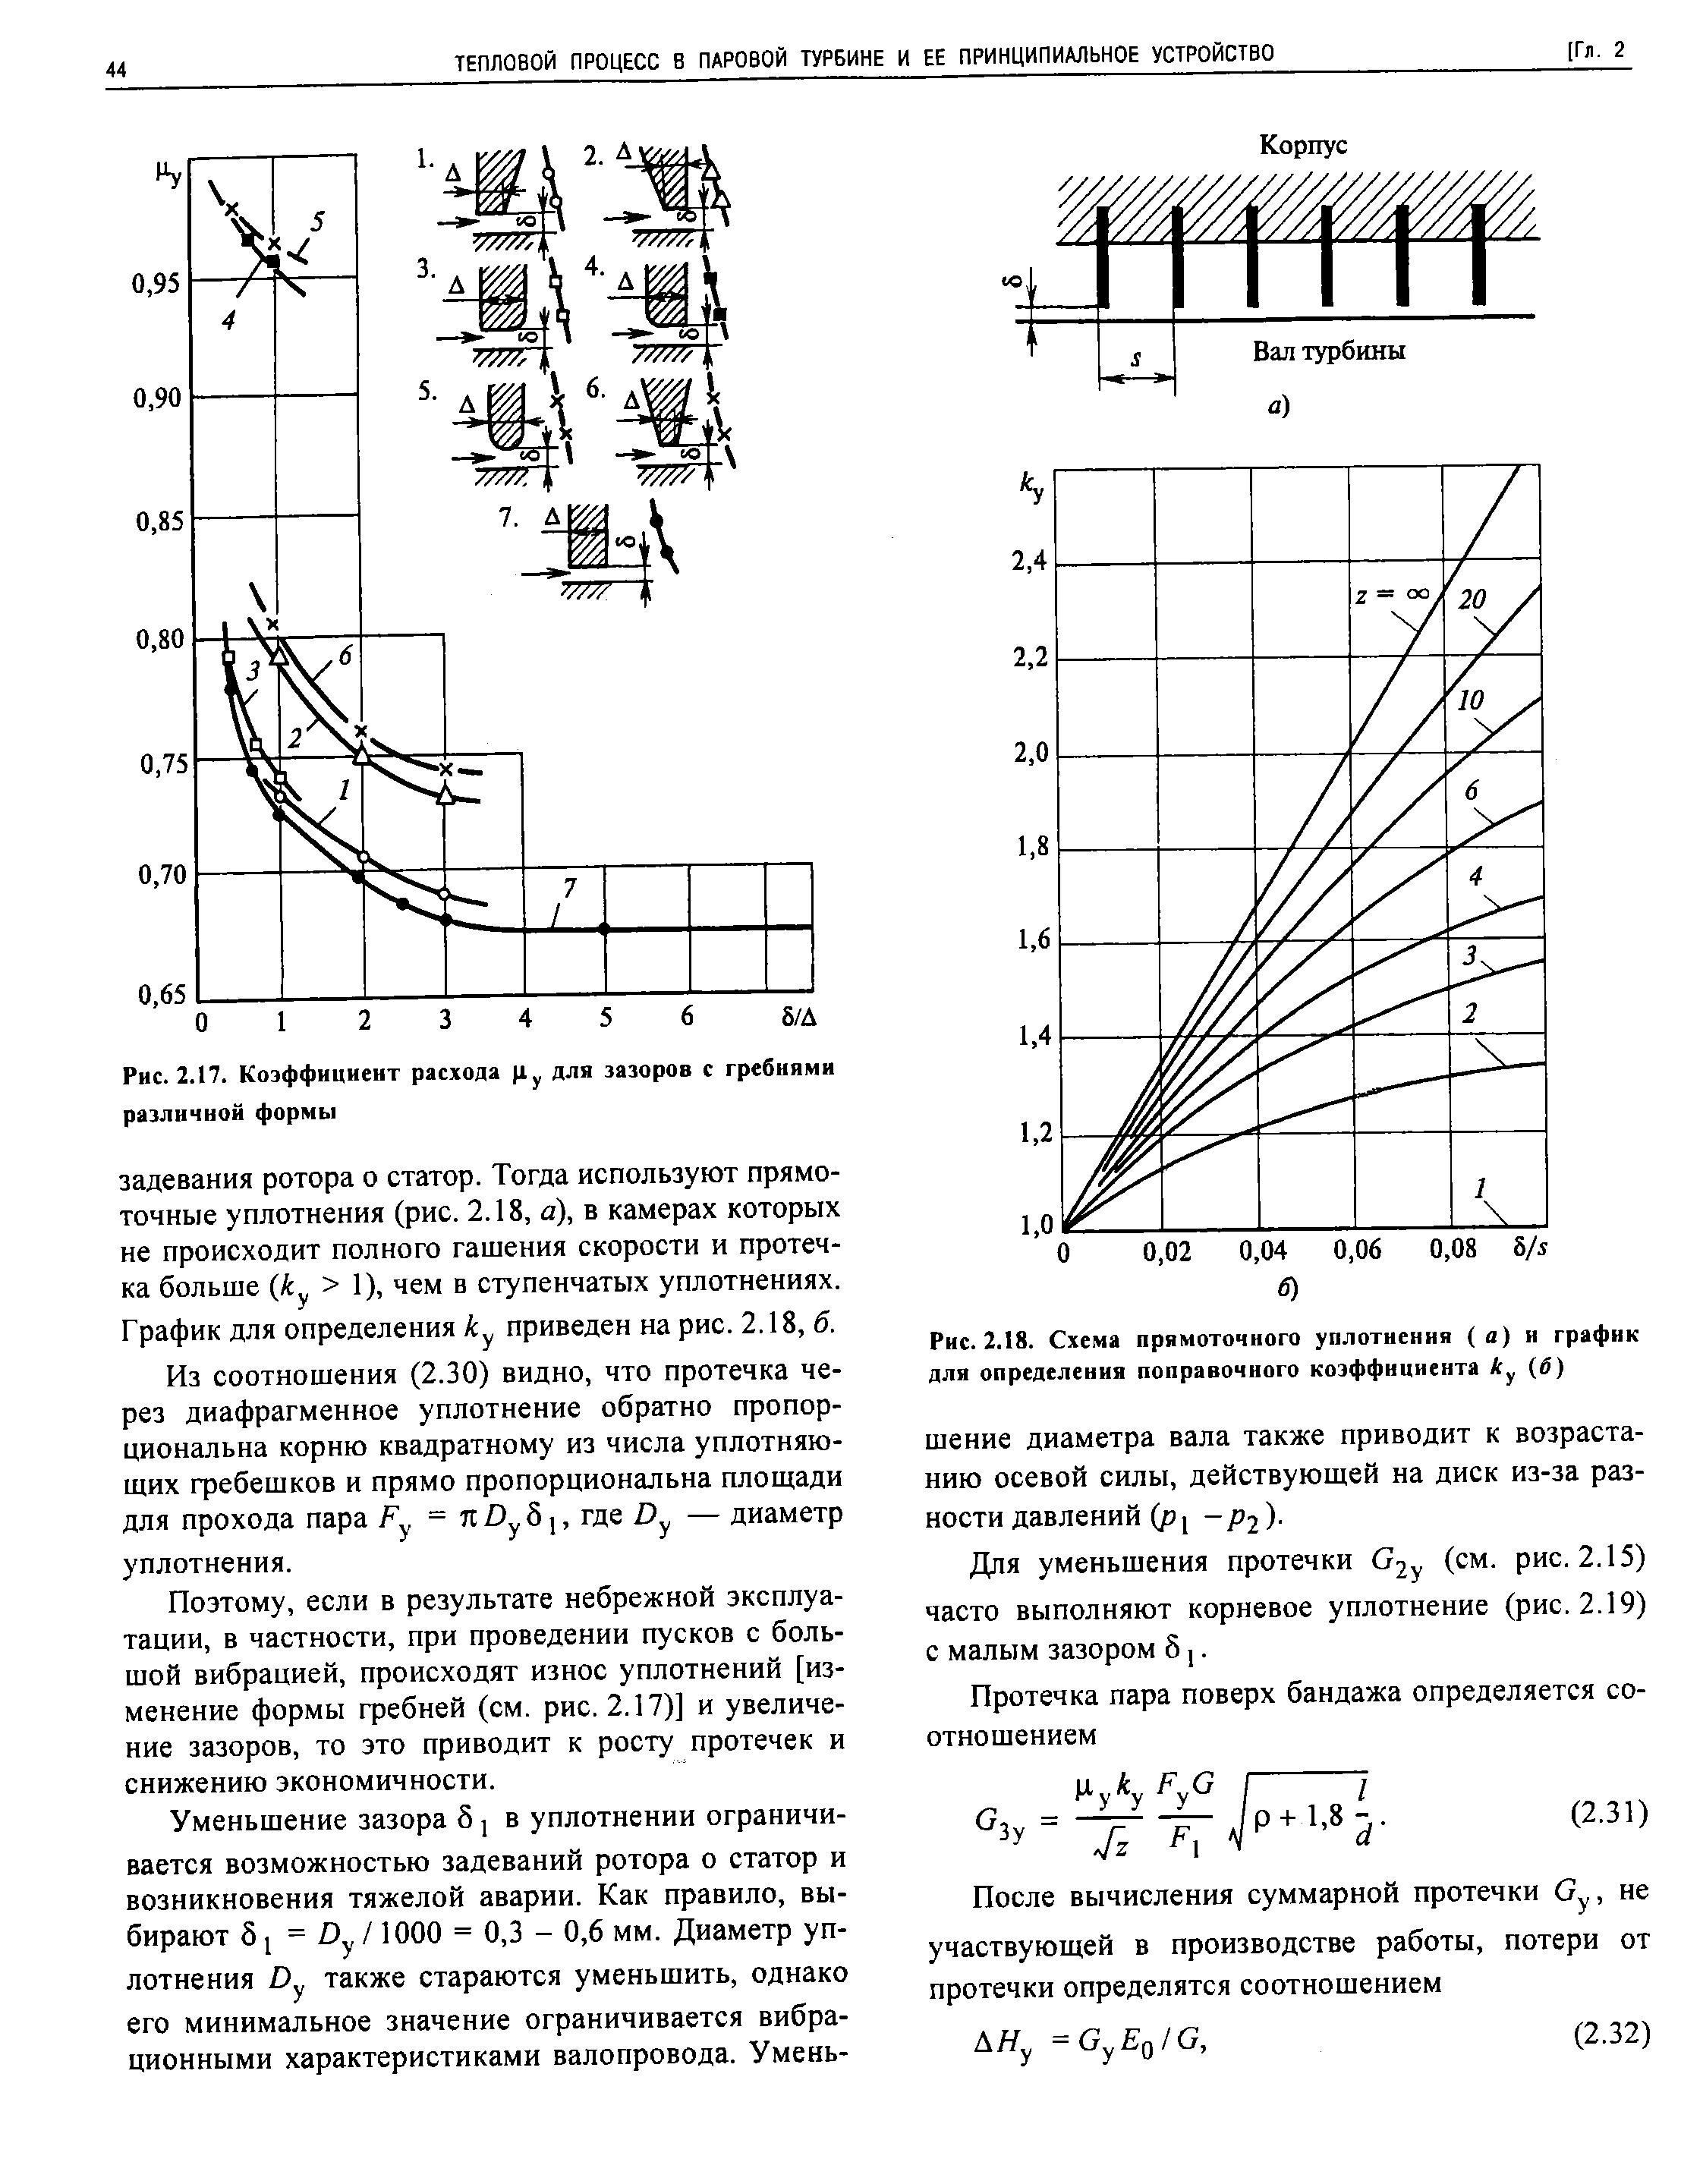 Рис. 2.18. Схема прямоточного уплотнения (а) и график для определения поправочного коэффициента б)
